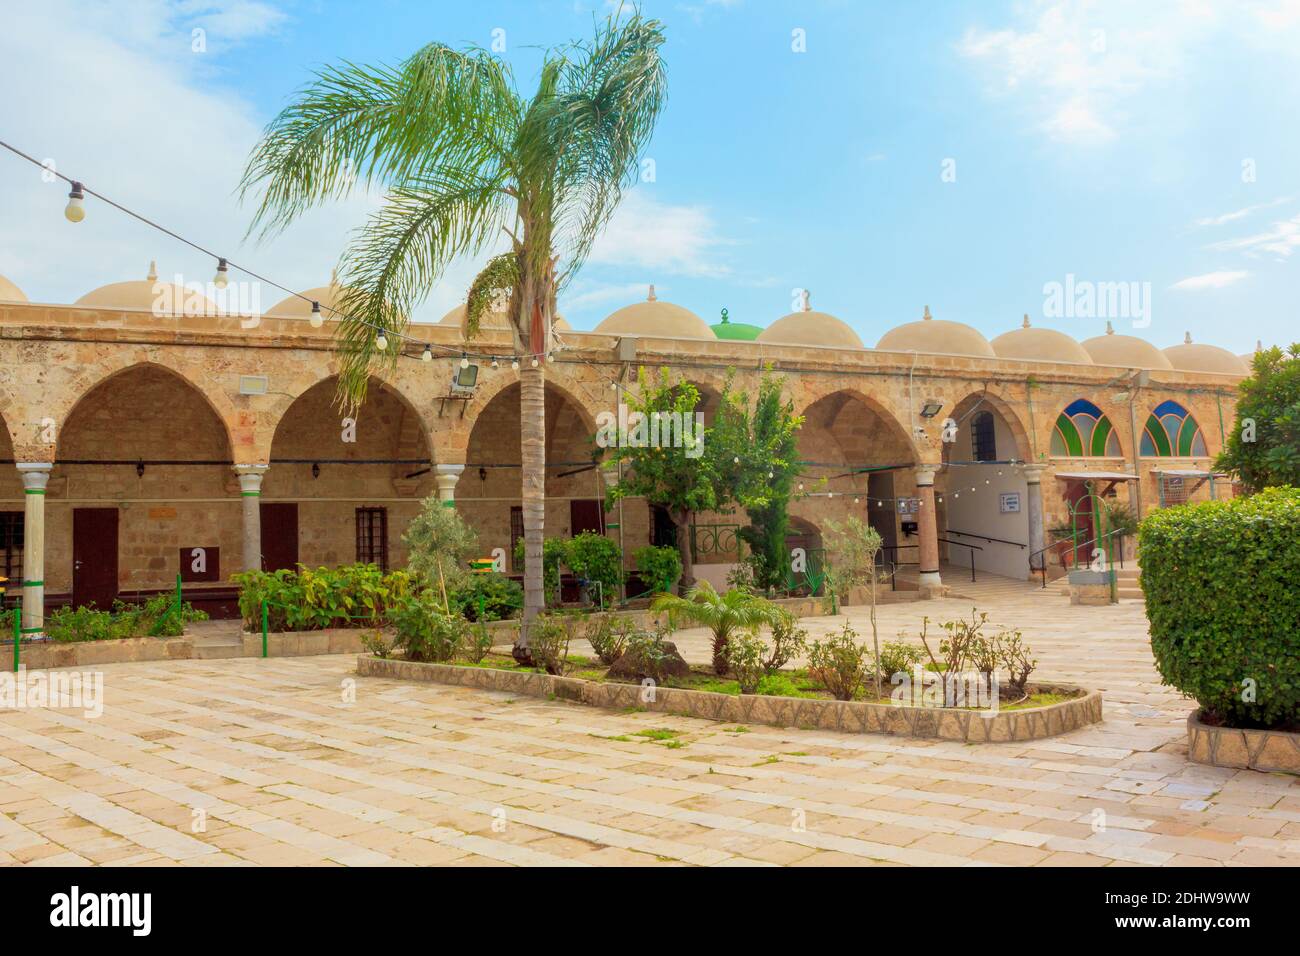 Acro, Israele - 31 dicembre 2020: Al-Jazzar moschea chiostro della città vecchia di Acre o Akko città, punto di riferimento storico del 1781 situato su el-Jazzar Street Foto Stock